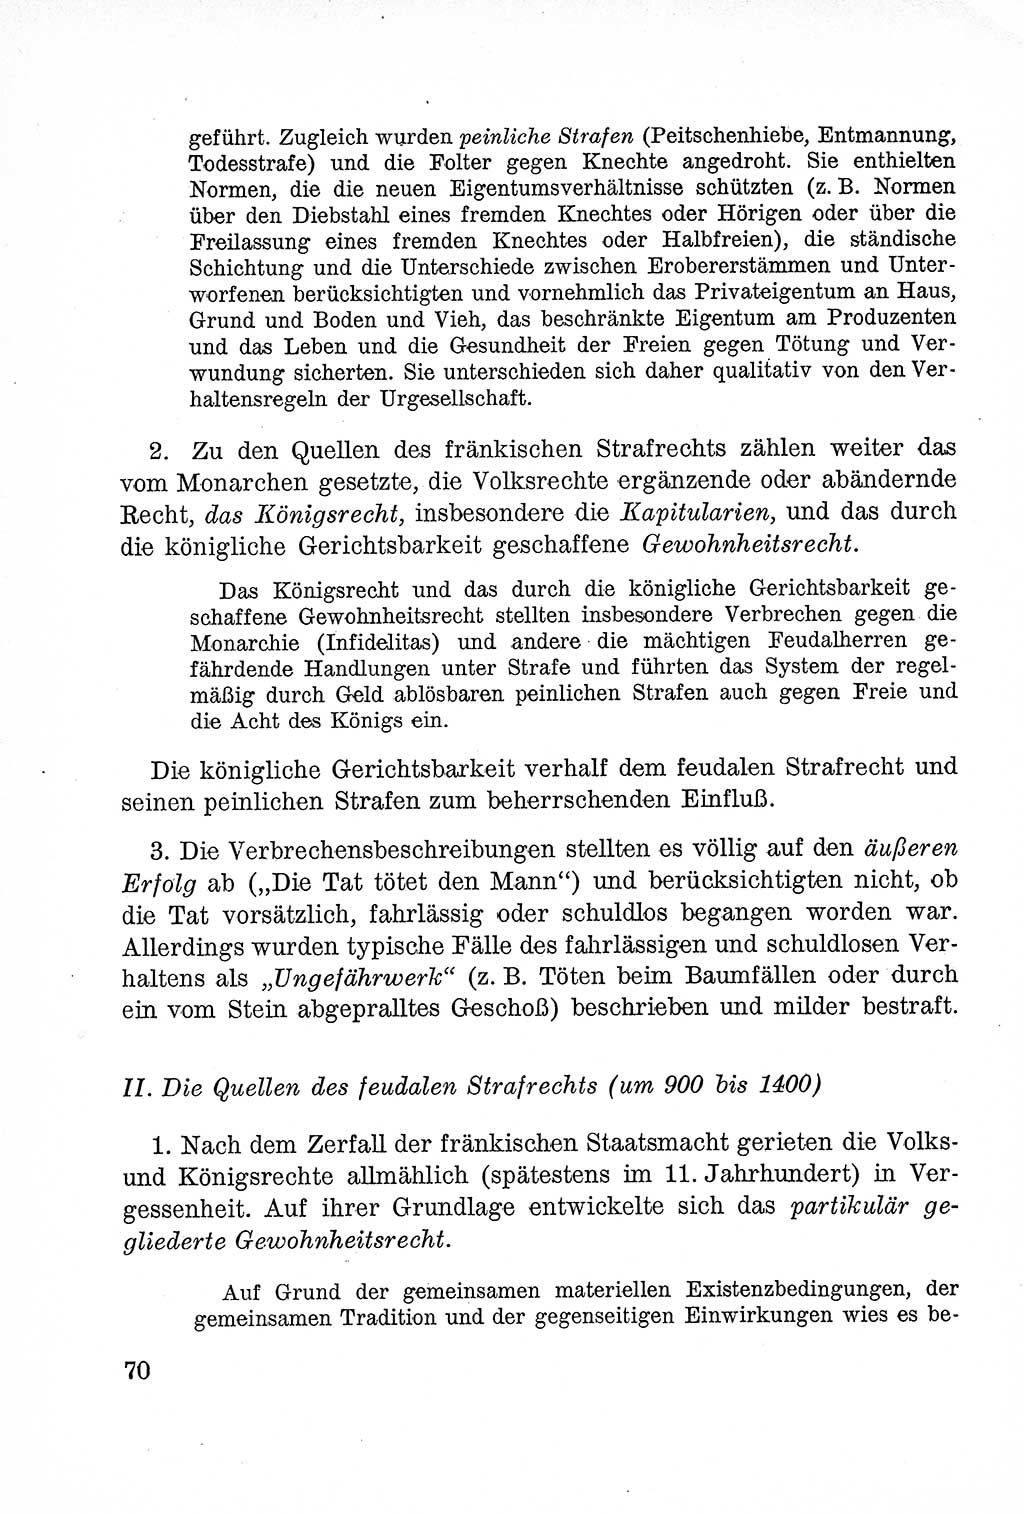 Lehrbuch des Strafrechts der Deutschen Demokratischen Republik (DDR), Allgemeiner Teil 1957, Seite 70 (Lb. Strafr. DDR AT 1957, S. 70)